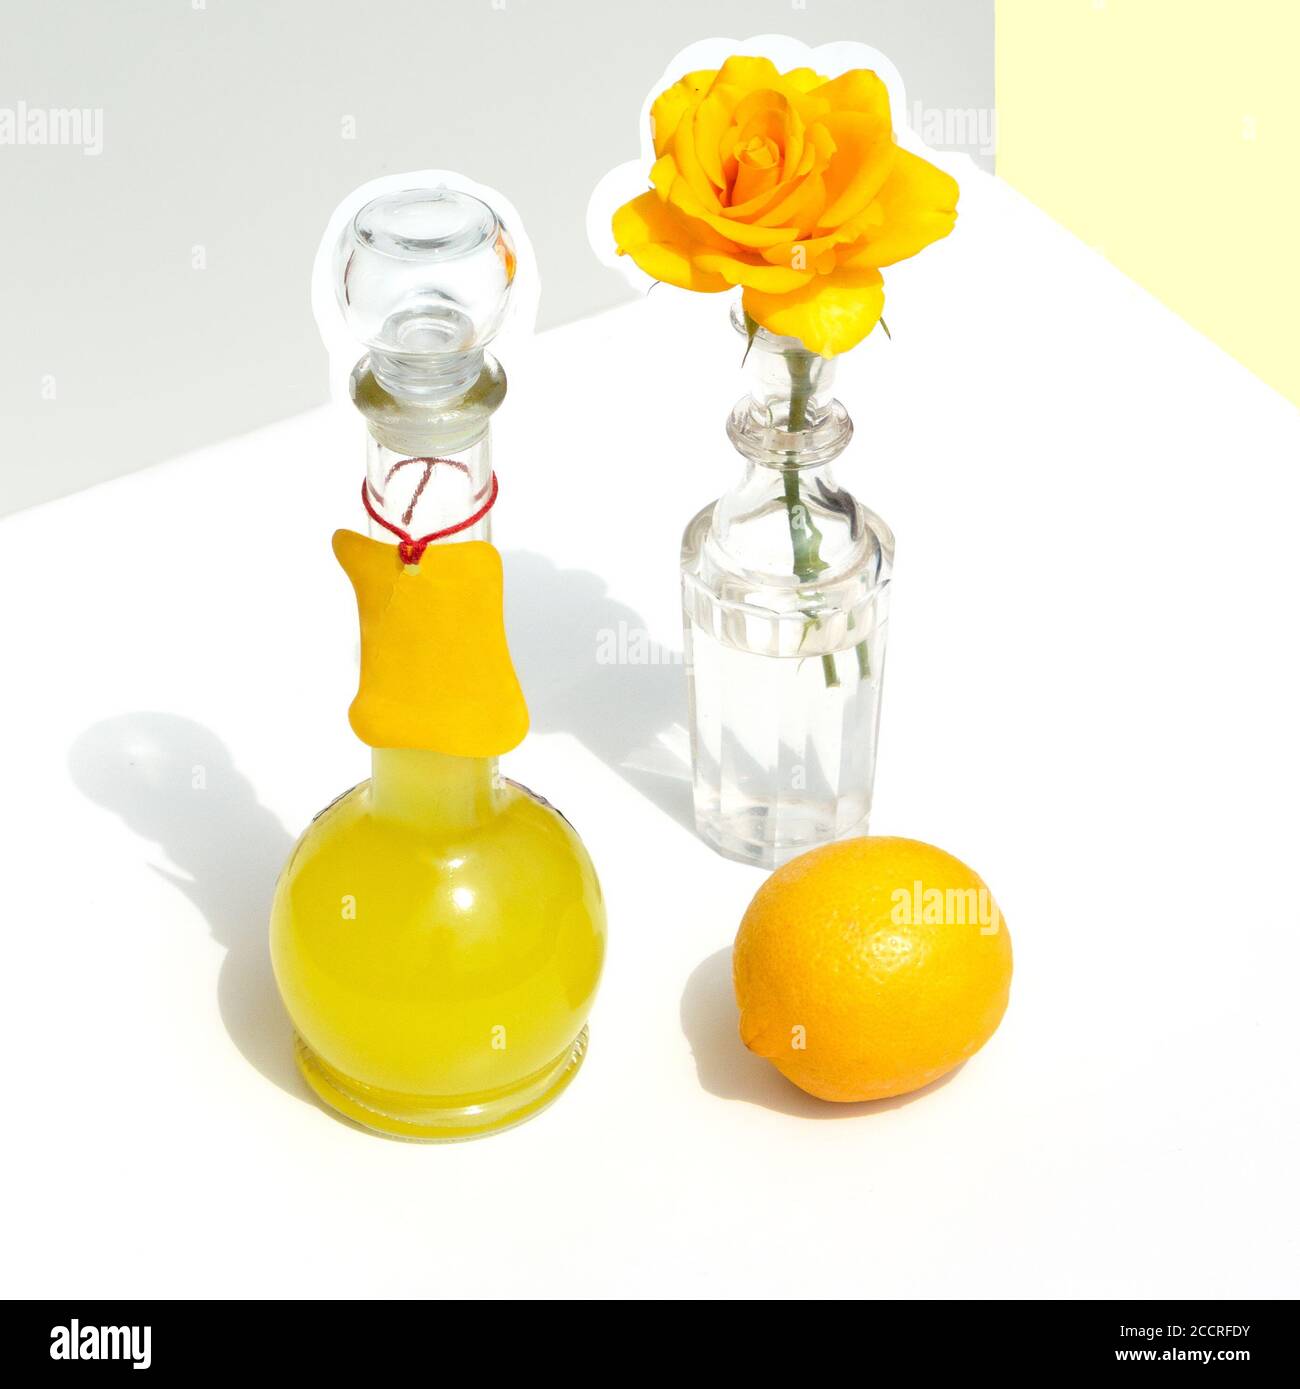 Bottiglia di limoncello italiano, limone e rosa gialla. Moderna vita still minimalistica su sfondo geometrico con luce solare e ombre. Foto Stock